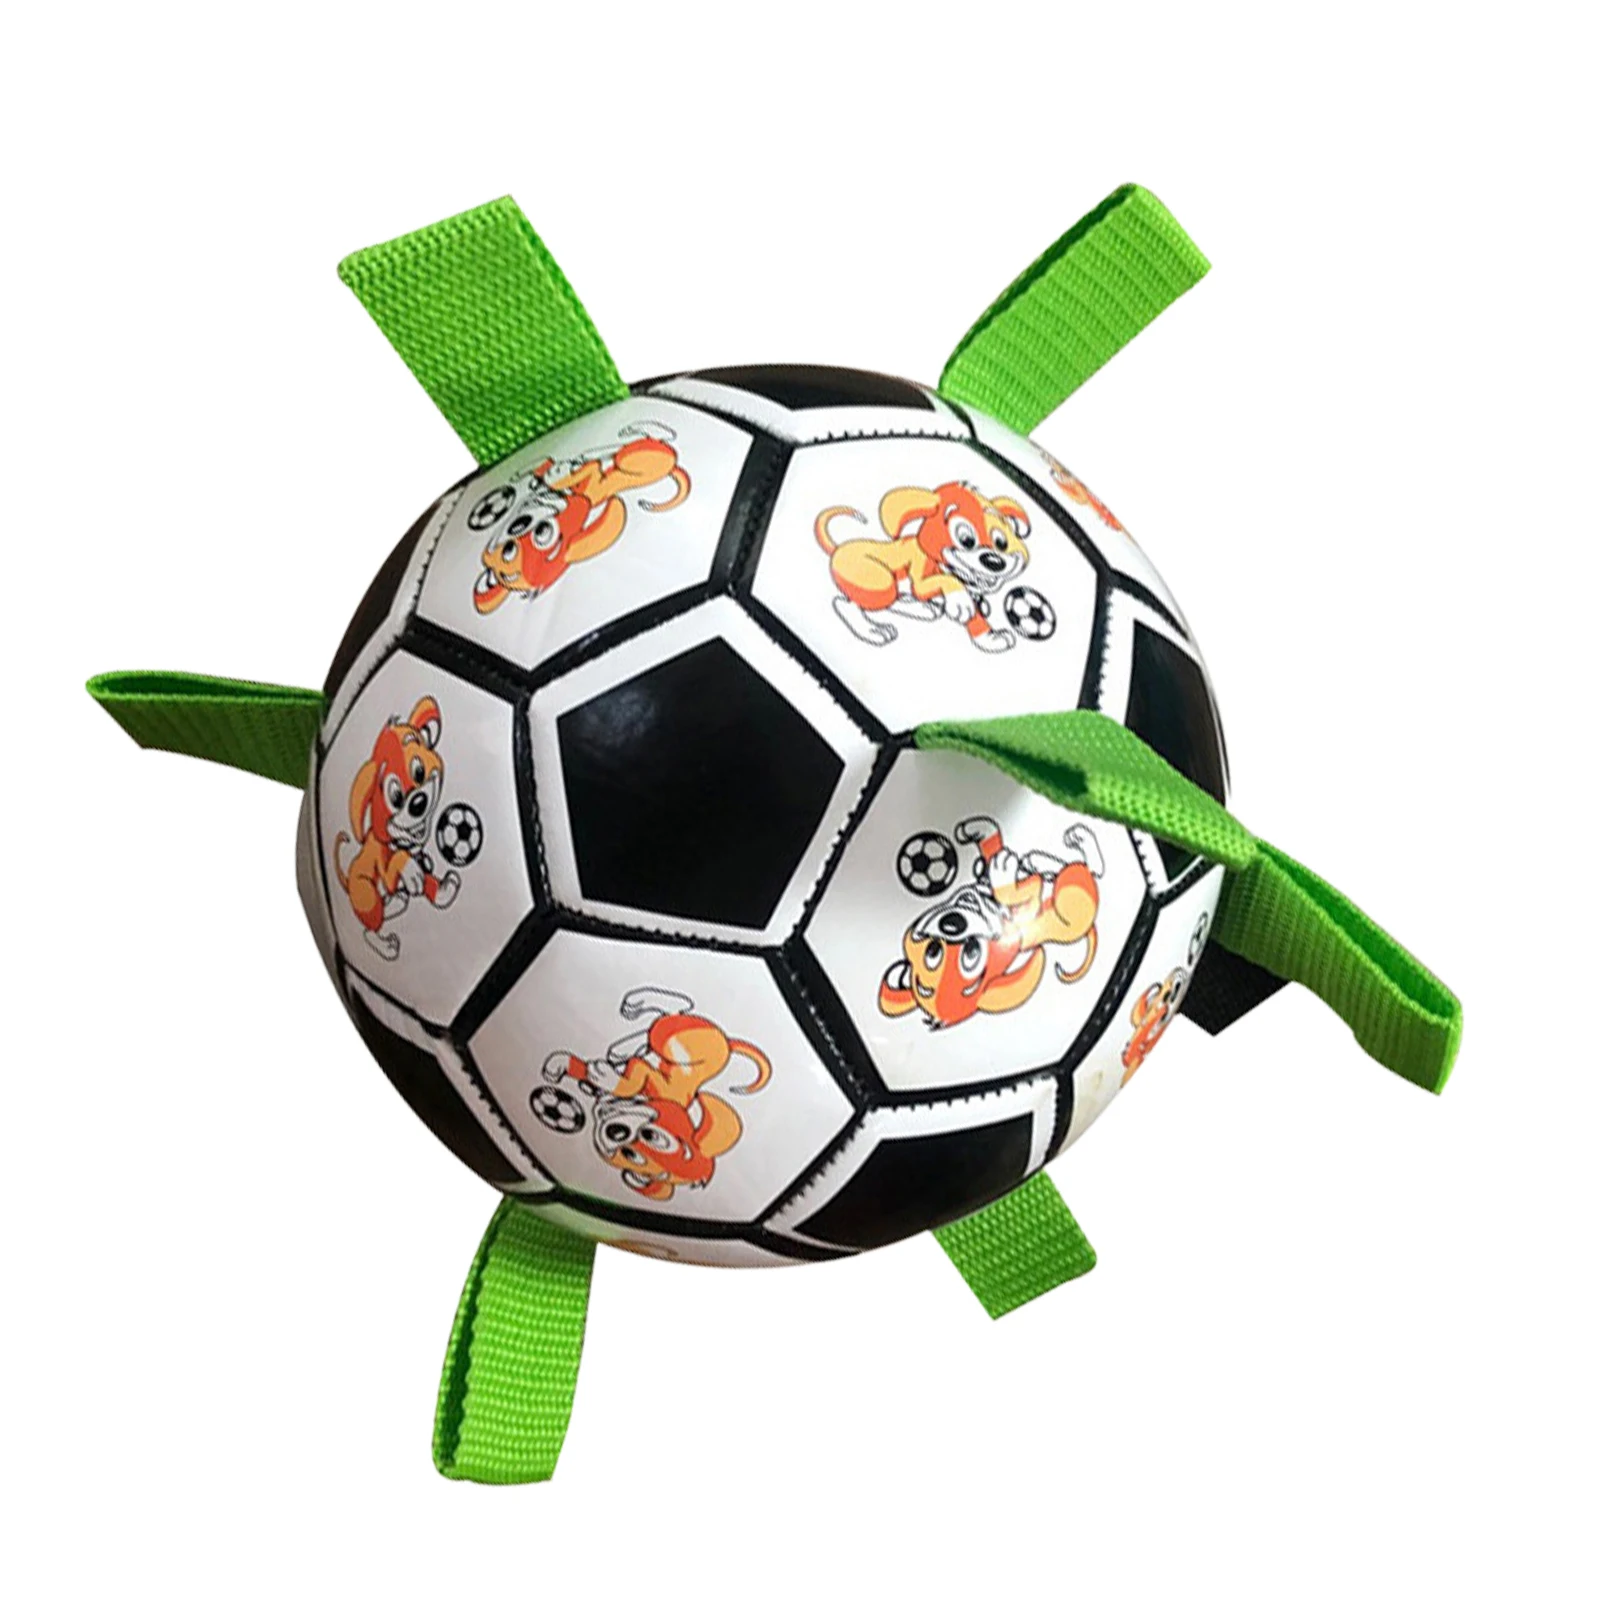 

Мяч для собачьего футбола с ремешками, мяч для собачьего футбола для дома и улицы, интерактивные игрушки для собак, мячи для собак, забавная ...